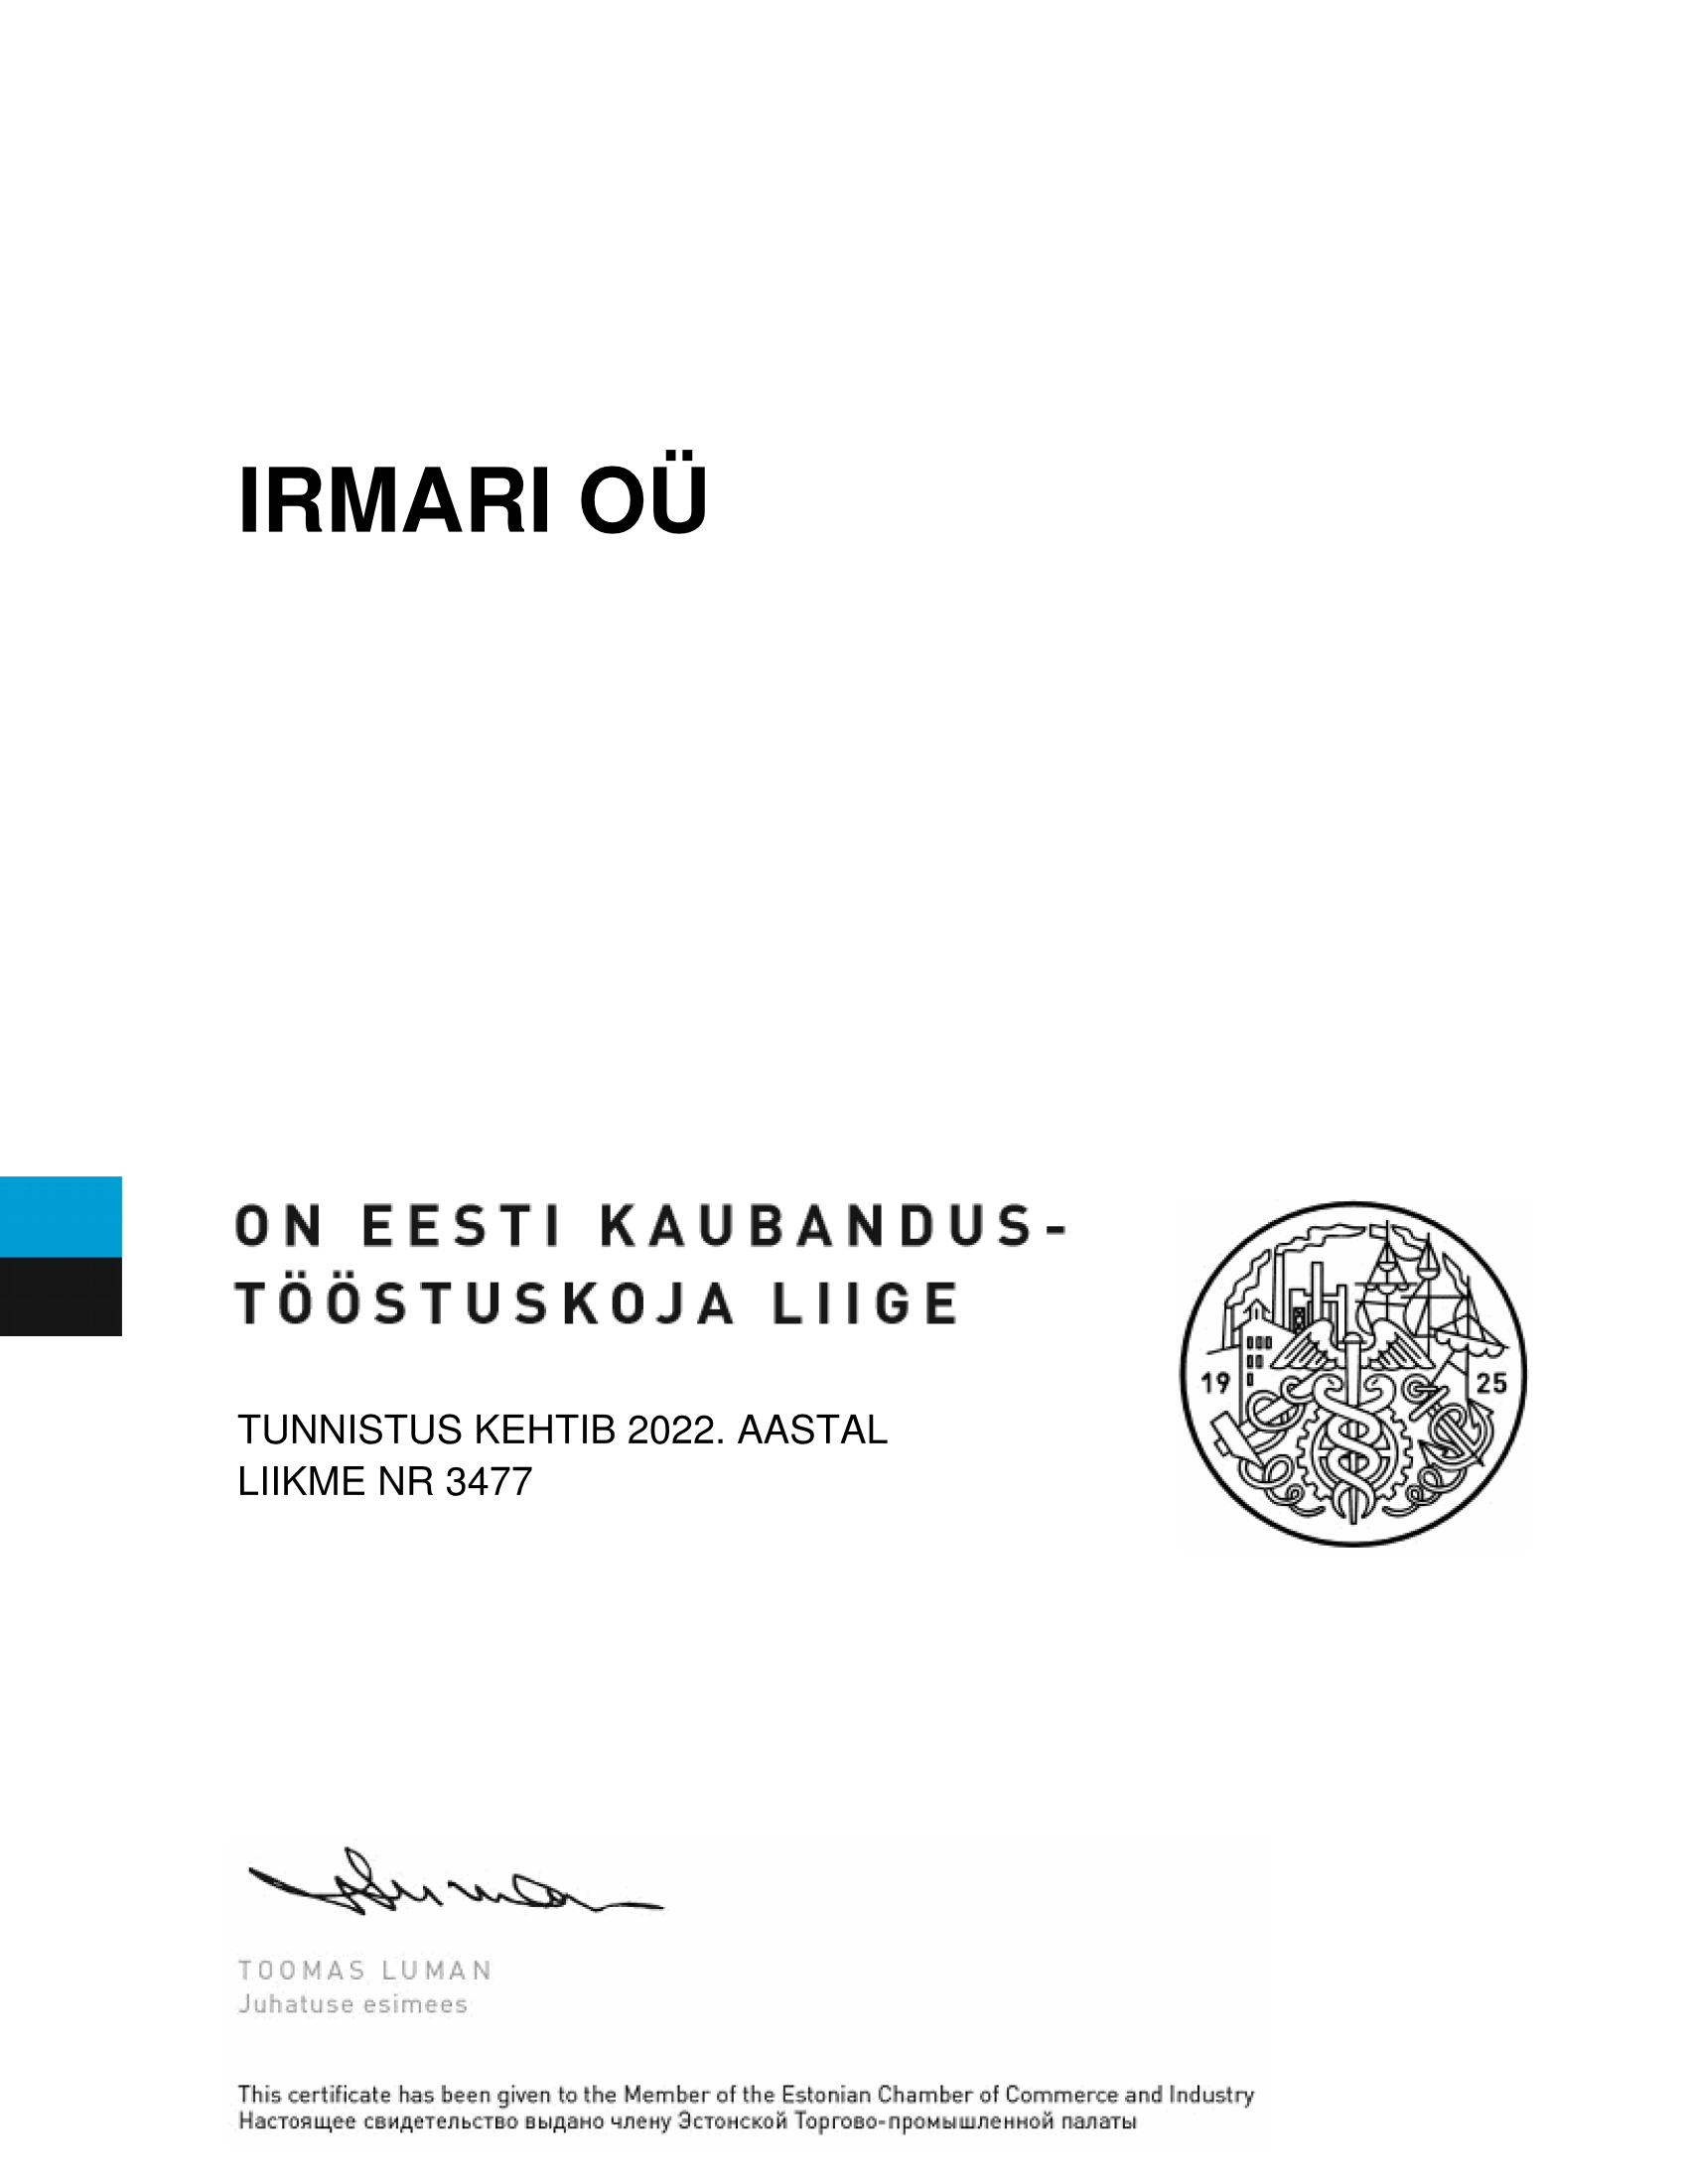 Certificate-IRMARI-20220316-924